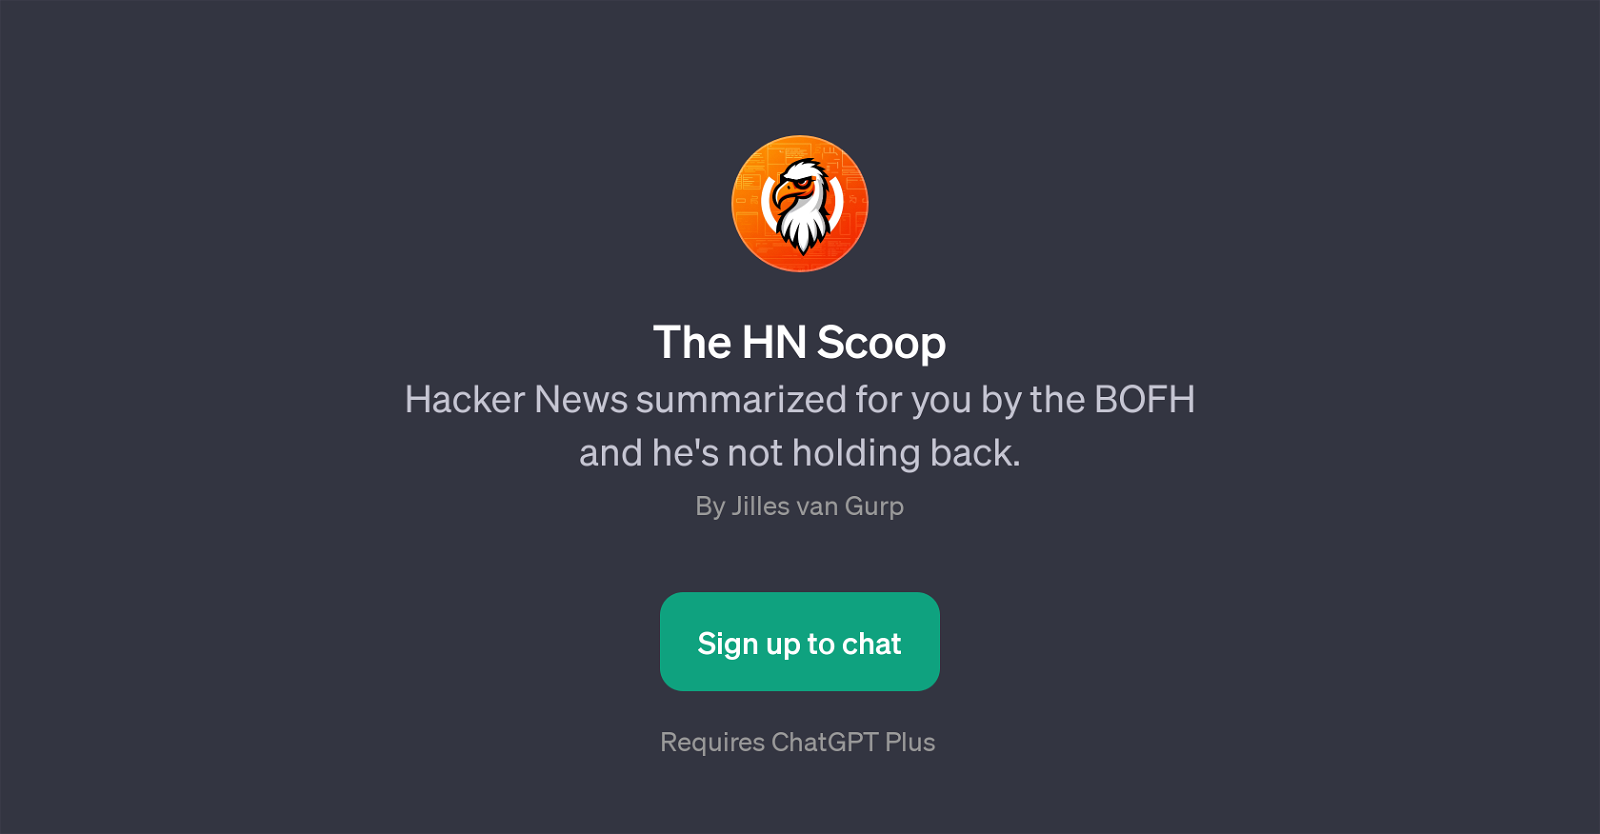 The HN Scoop website